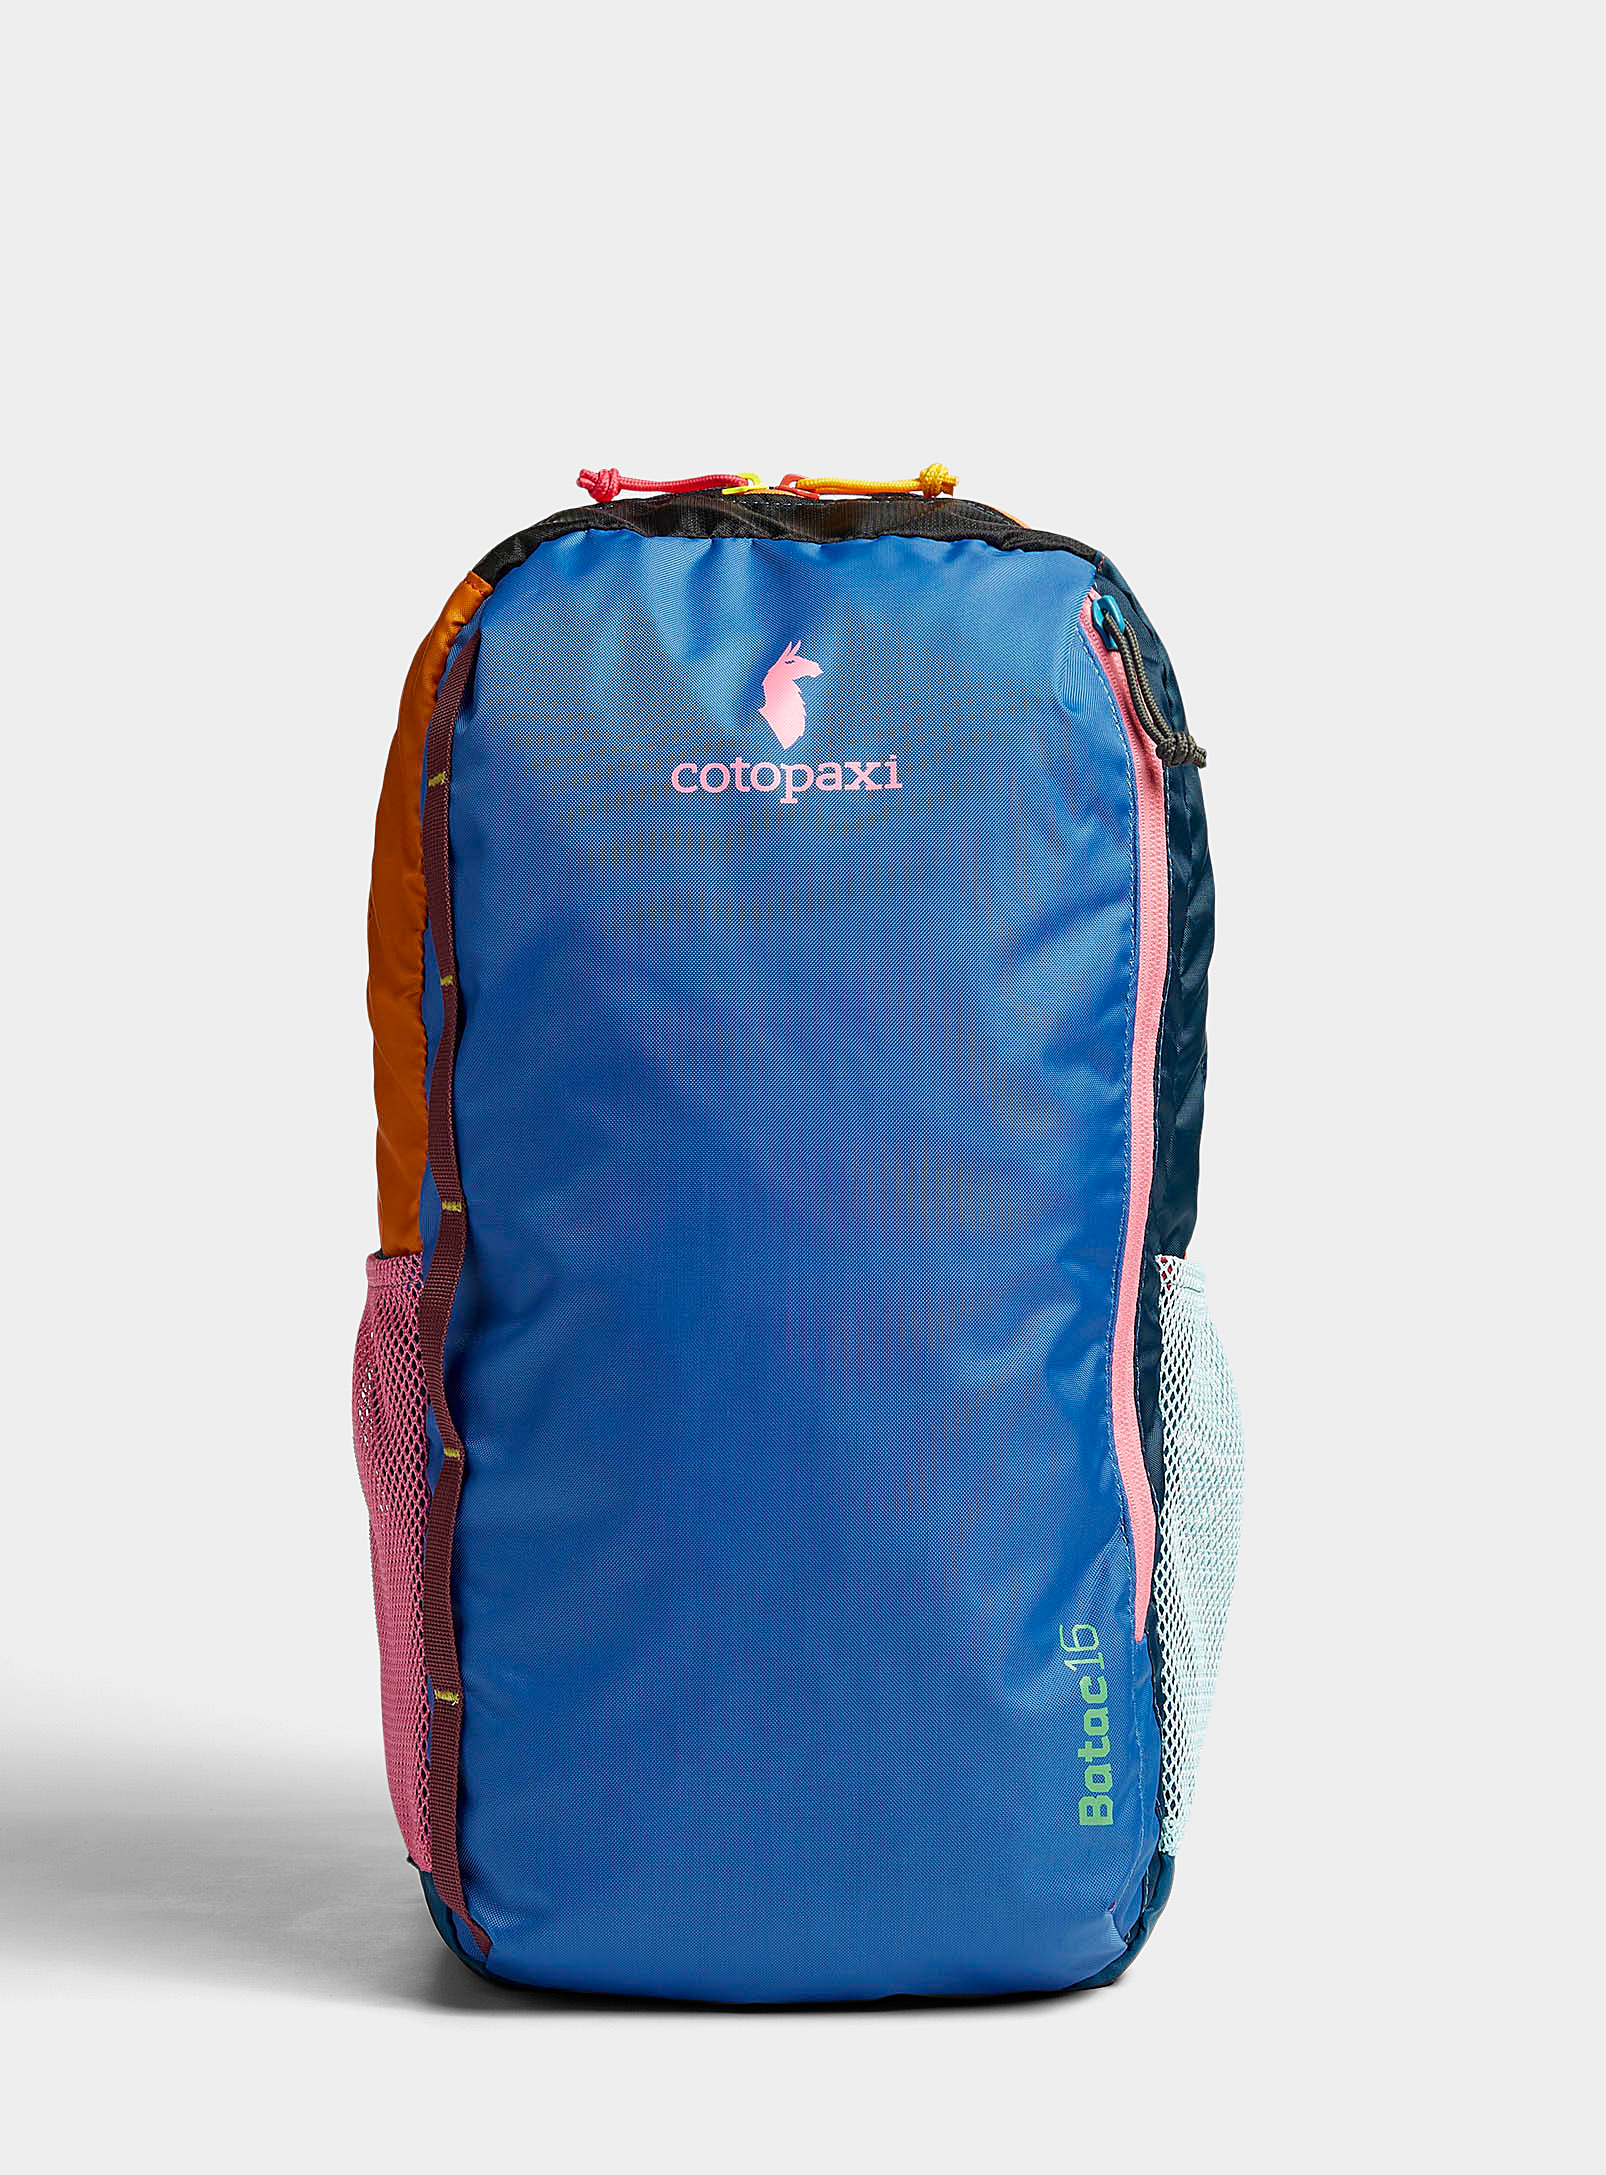 Cotopaxi - Men's Batac 16L backpack